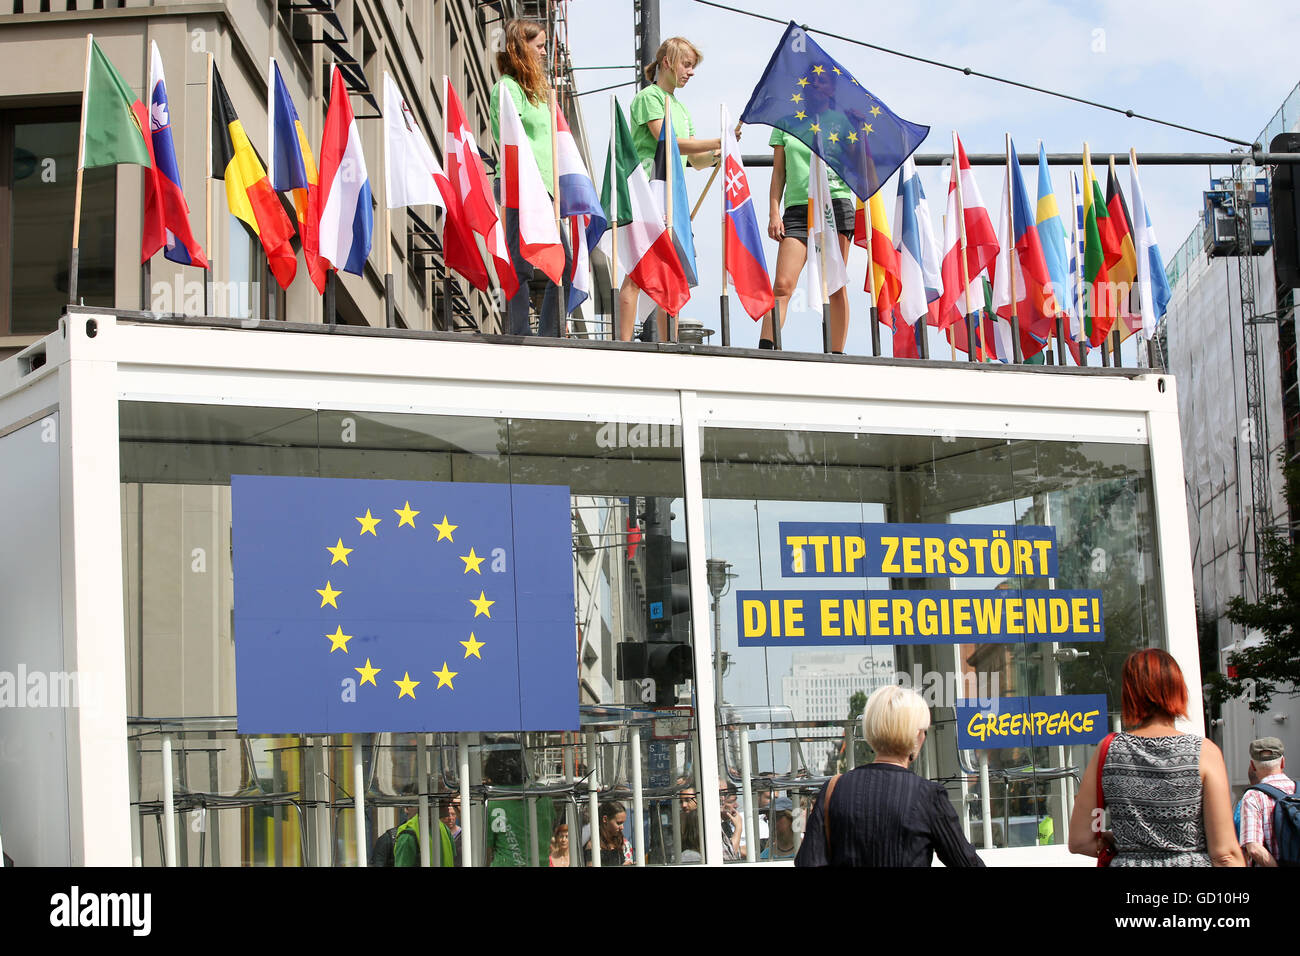 Greenpeace-Sprecher Christoph von Lieven (l) und anderen Greenpeace-Aktivisten protestieren mit einem Glas Lesesaal mit einem Banner zu lesen 'TTIP zerstört die Energiewende' in Berlin, Deutschland, 11. Juli 2016. Sie haben Congreated vor der Delegation der Europäischen Kommission am Pariser Platz in der deutschen Hauptstadt. In der Klage gegen das geplante Freihandelsabkommen TTIP Greenpeace bisher geheimen TTIP-Dokumente der Öffentlichkeit vorgestellt. Zur gleichen Zeit in Brüssel begann die 14. Runde der Verhandlungen über das geplante Freihandelsabkommen. Foto: BODO MARKS/dpa Stockfoto